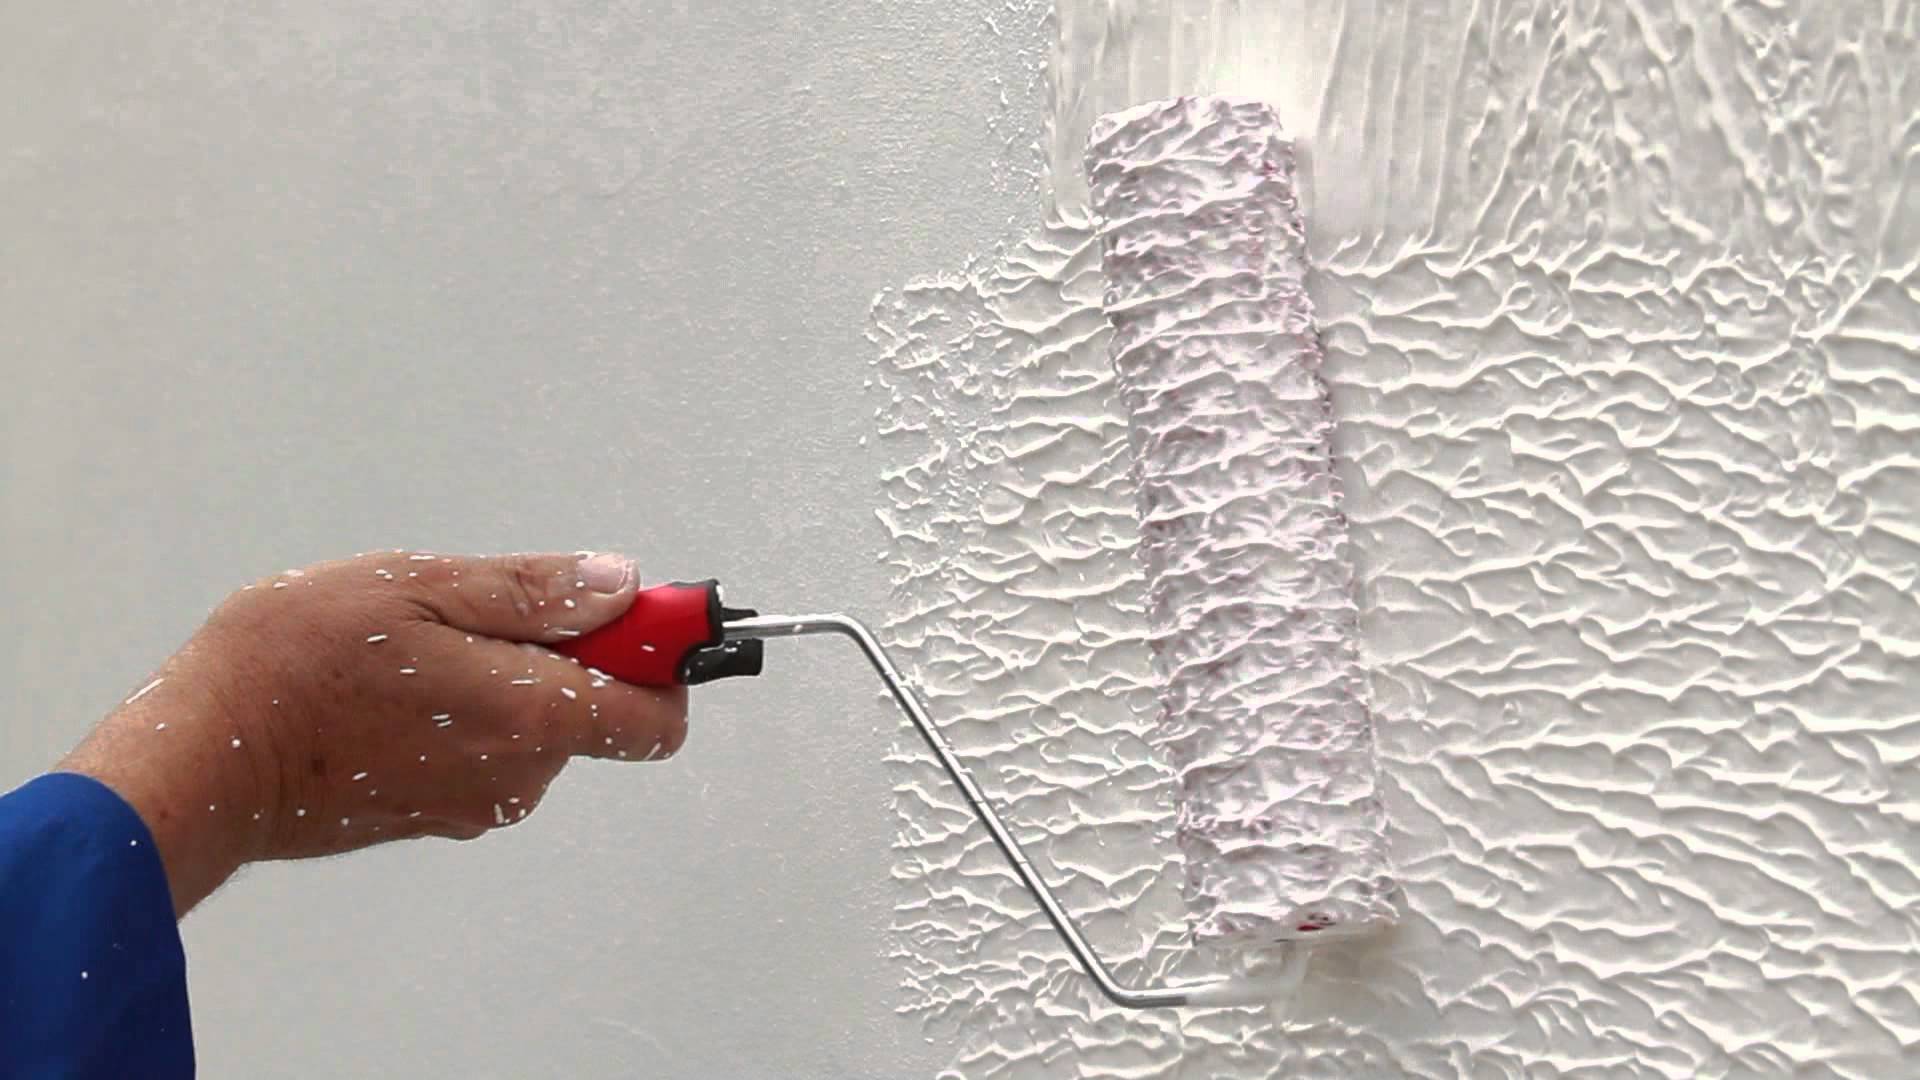 Фактурная краска для стен — идеальная замена обоям